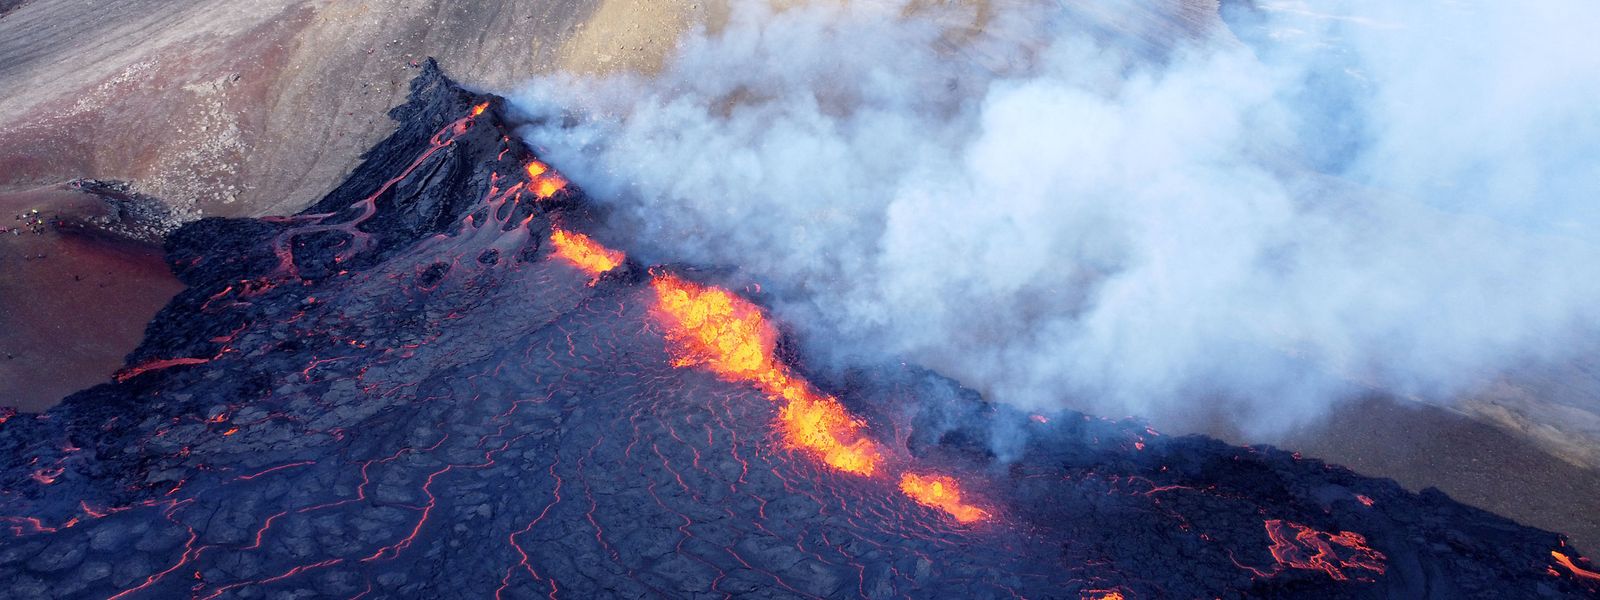 Vergangene Woche ereignete sich in einem Tal nahe dem Berg Fagradalsfjall in Island ein Vulkanausbruch.